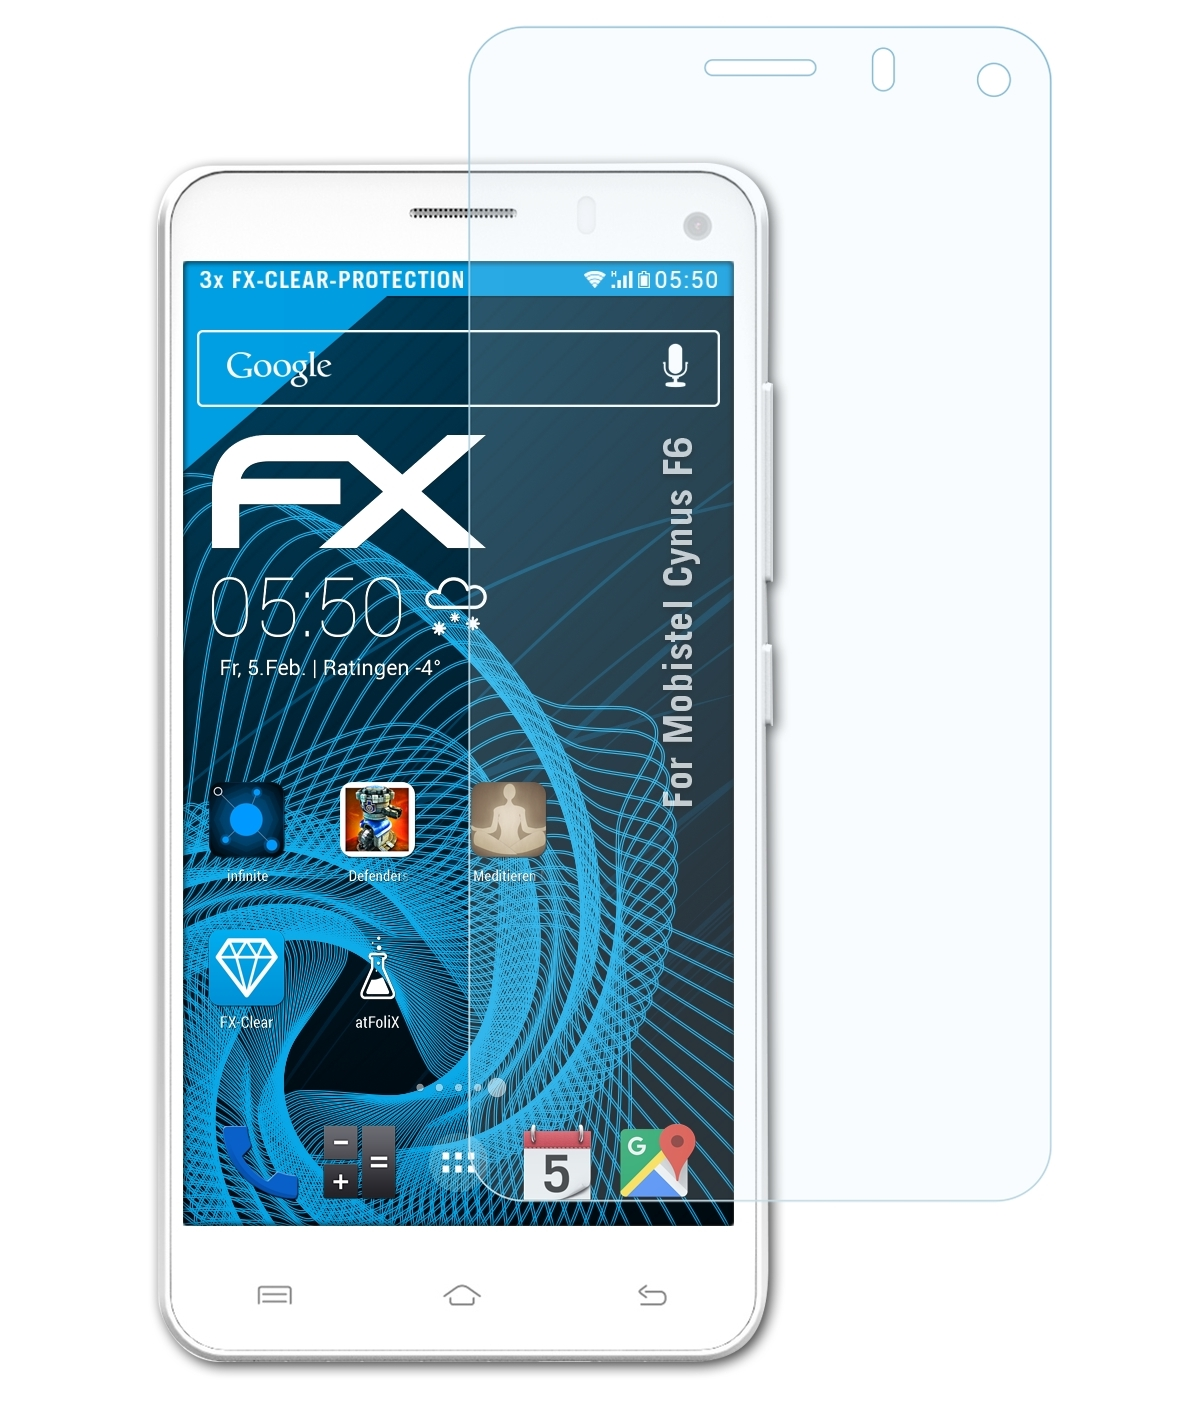 ATFOLIX 3x FX-Clear Displayschutz(für Mobistel F6) Cynus